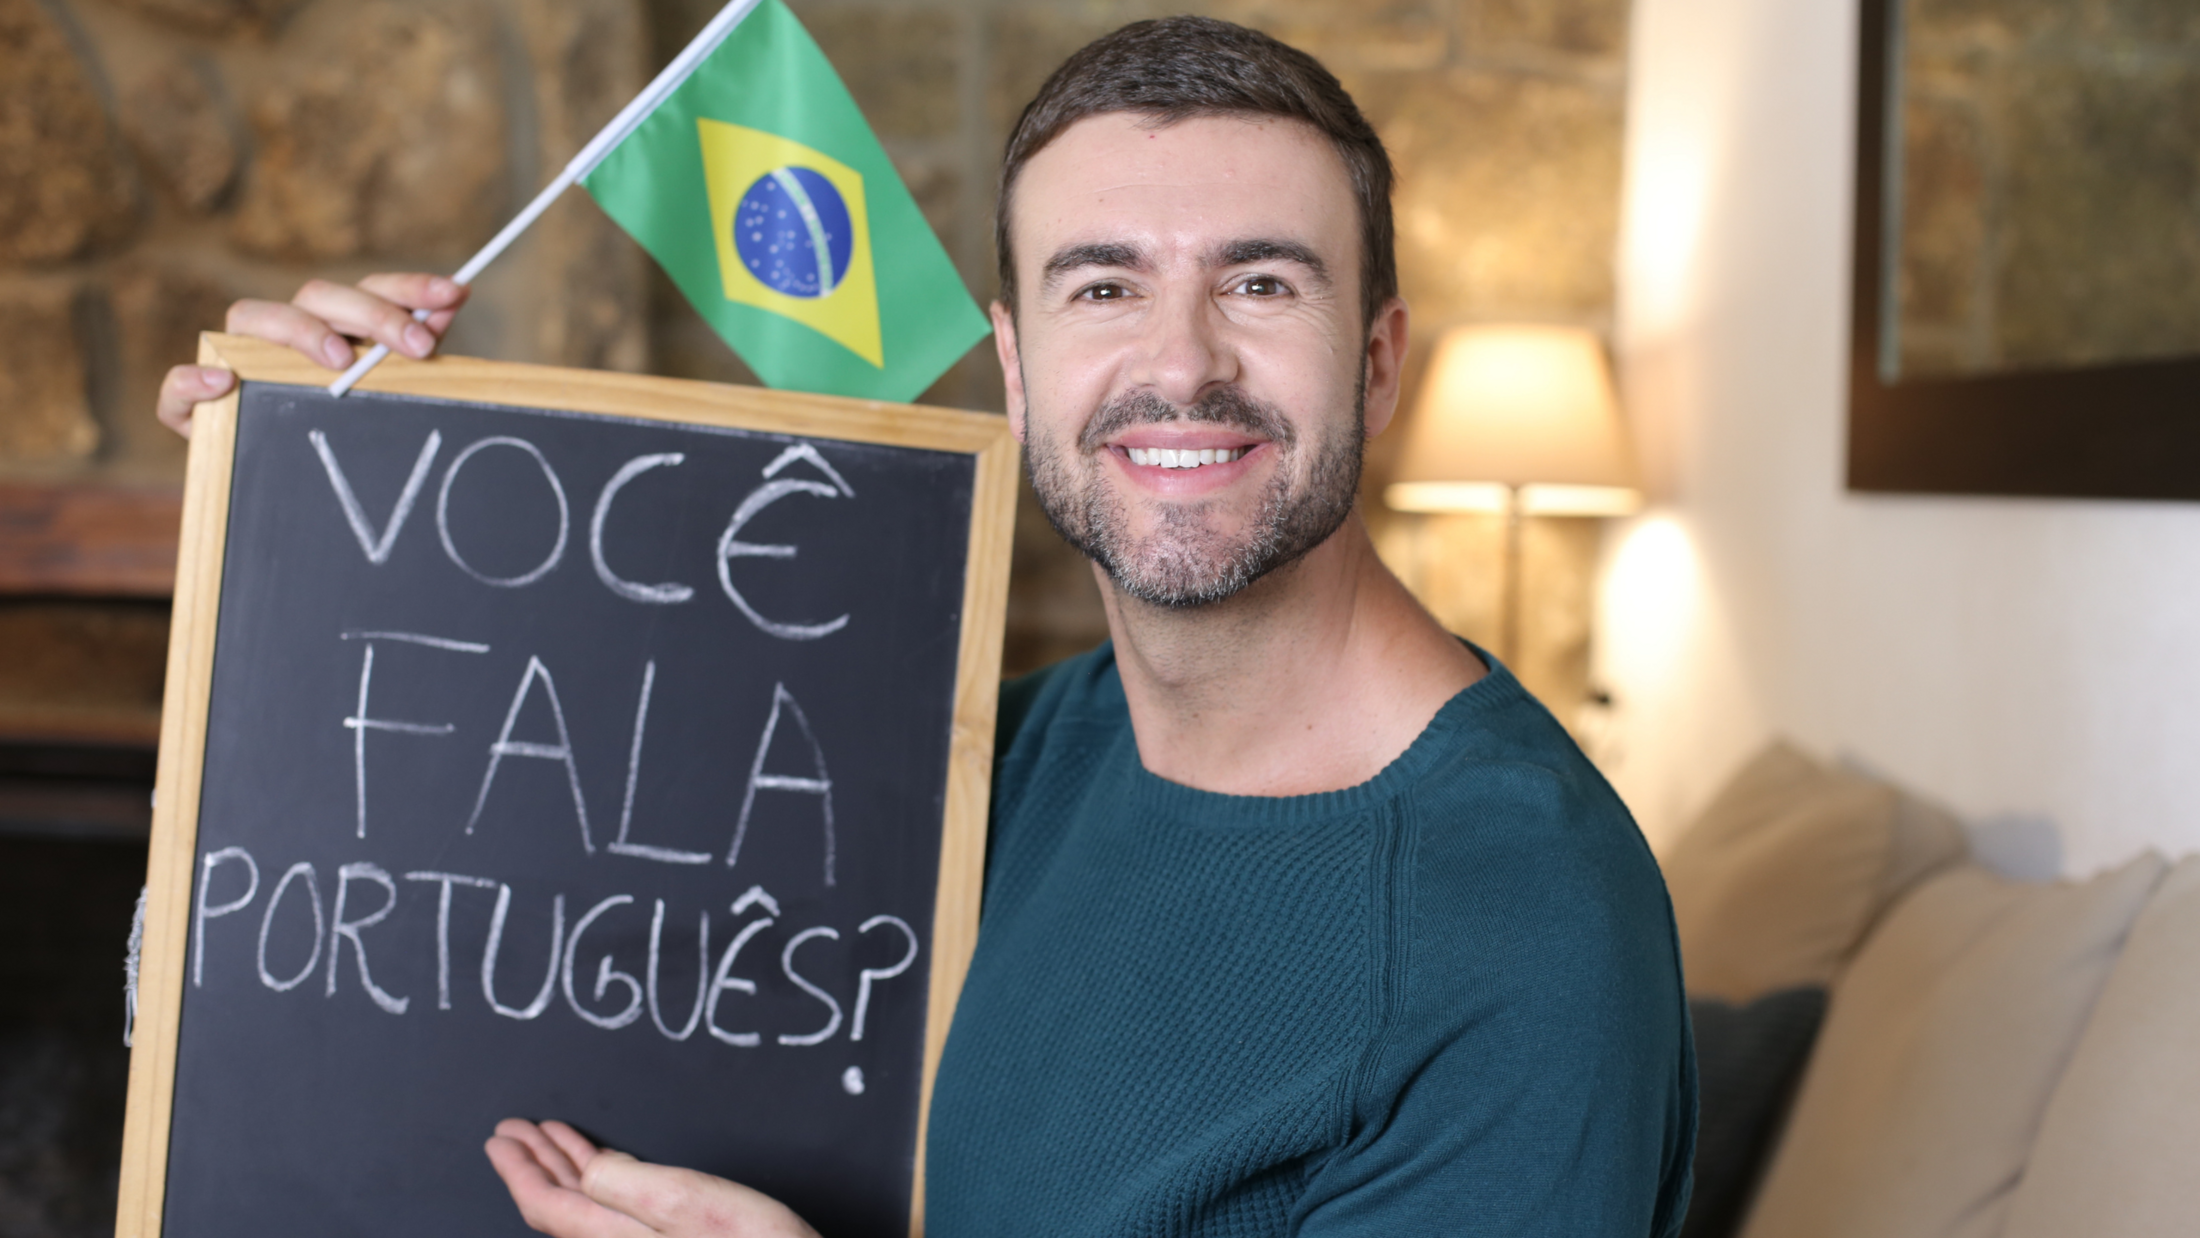 Welche Sprache spricht man in Brasilien?